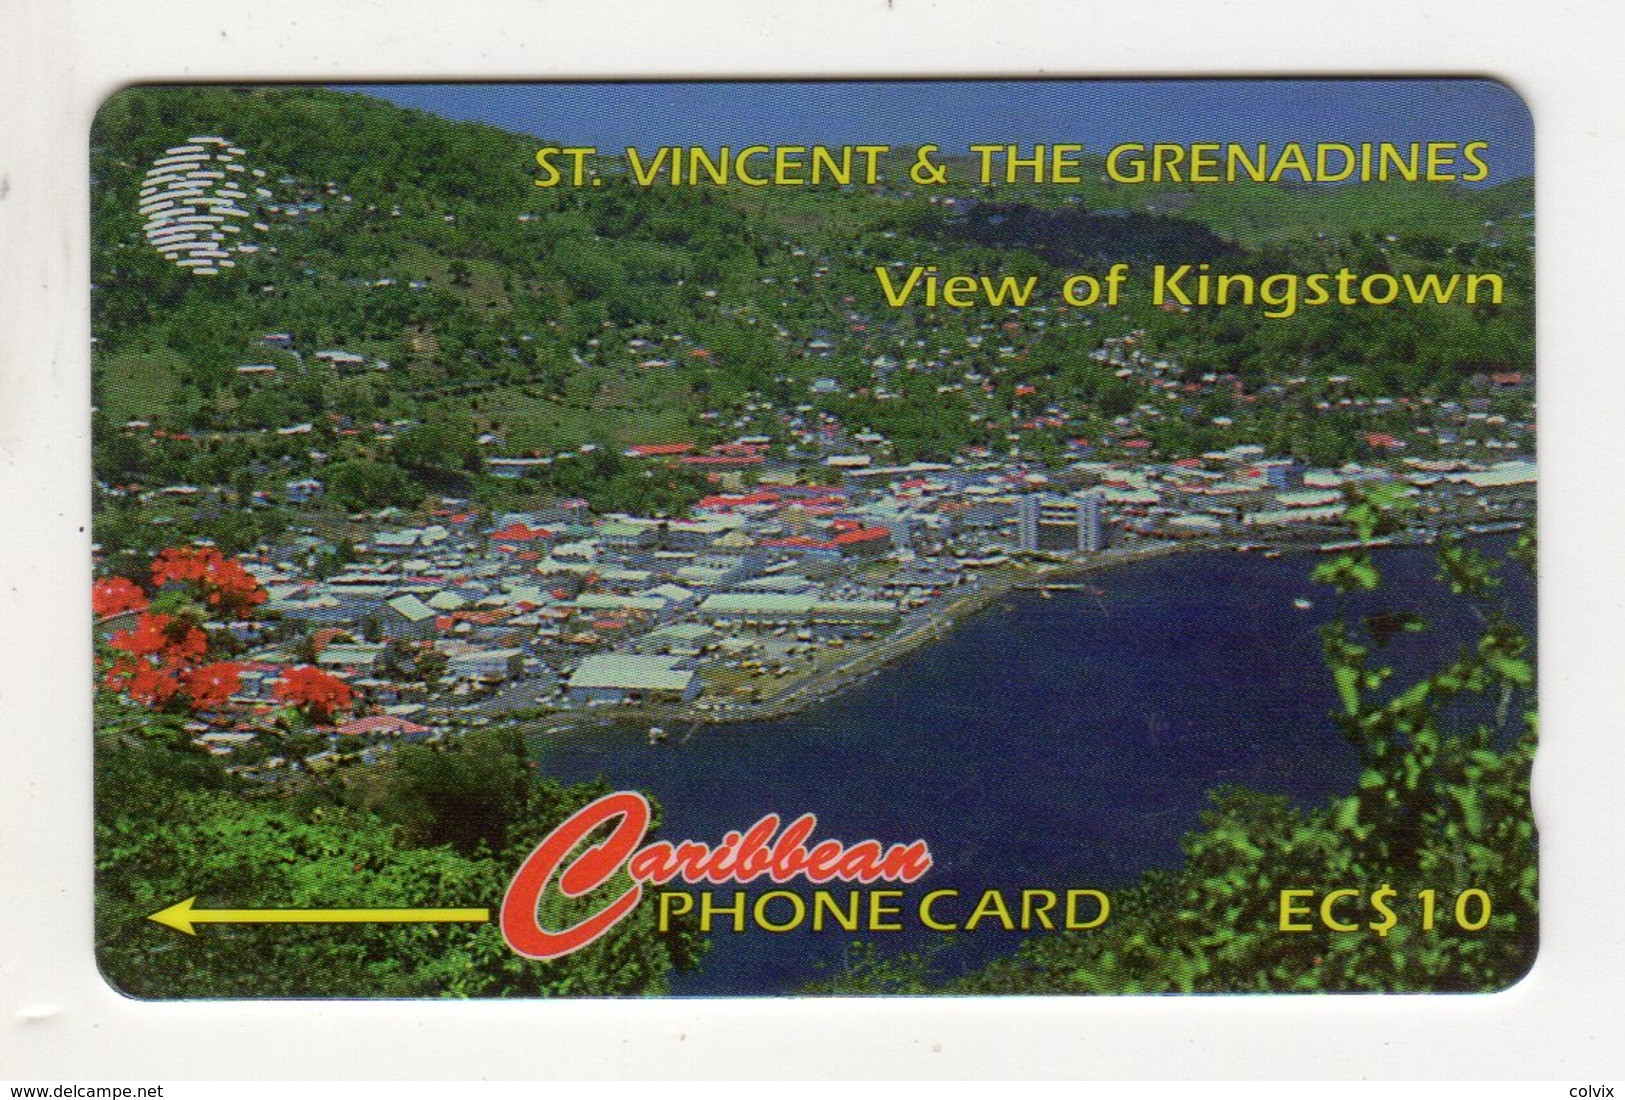 SAINT VINCENT ET GRENADINES REF MV CARDS STV-52B EC $10 52CSVB Date 1996 VIEW Of KINGSTOWN - San Vicente Y Las Granadinas